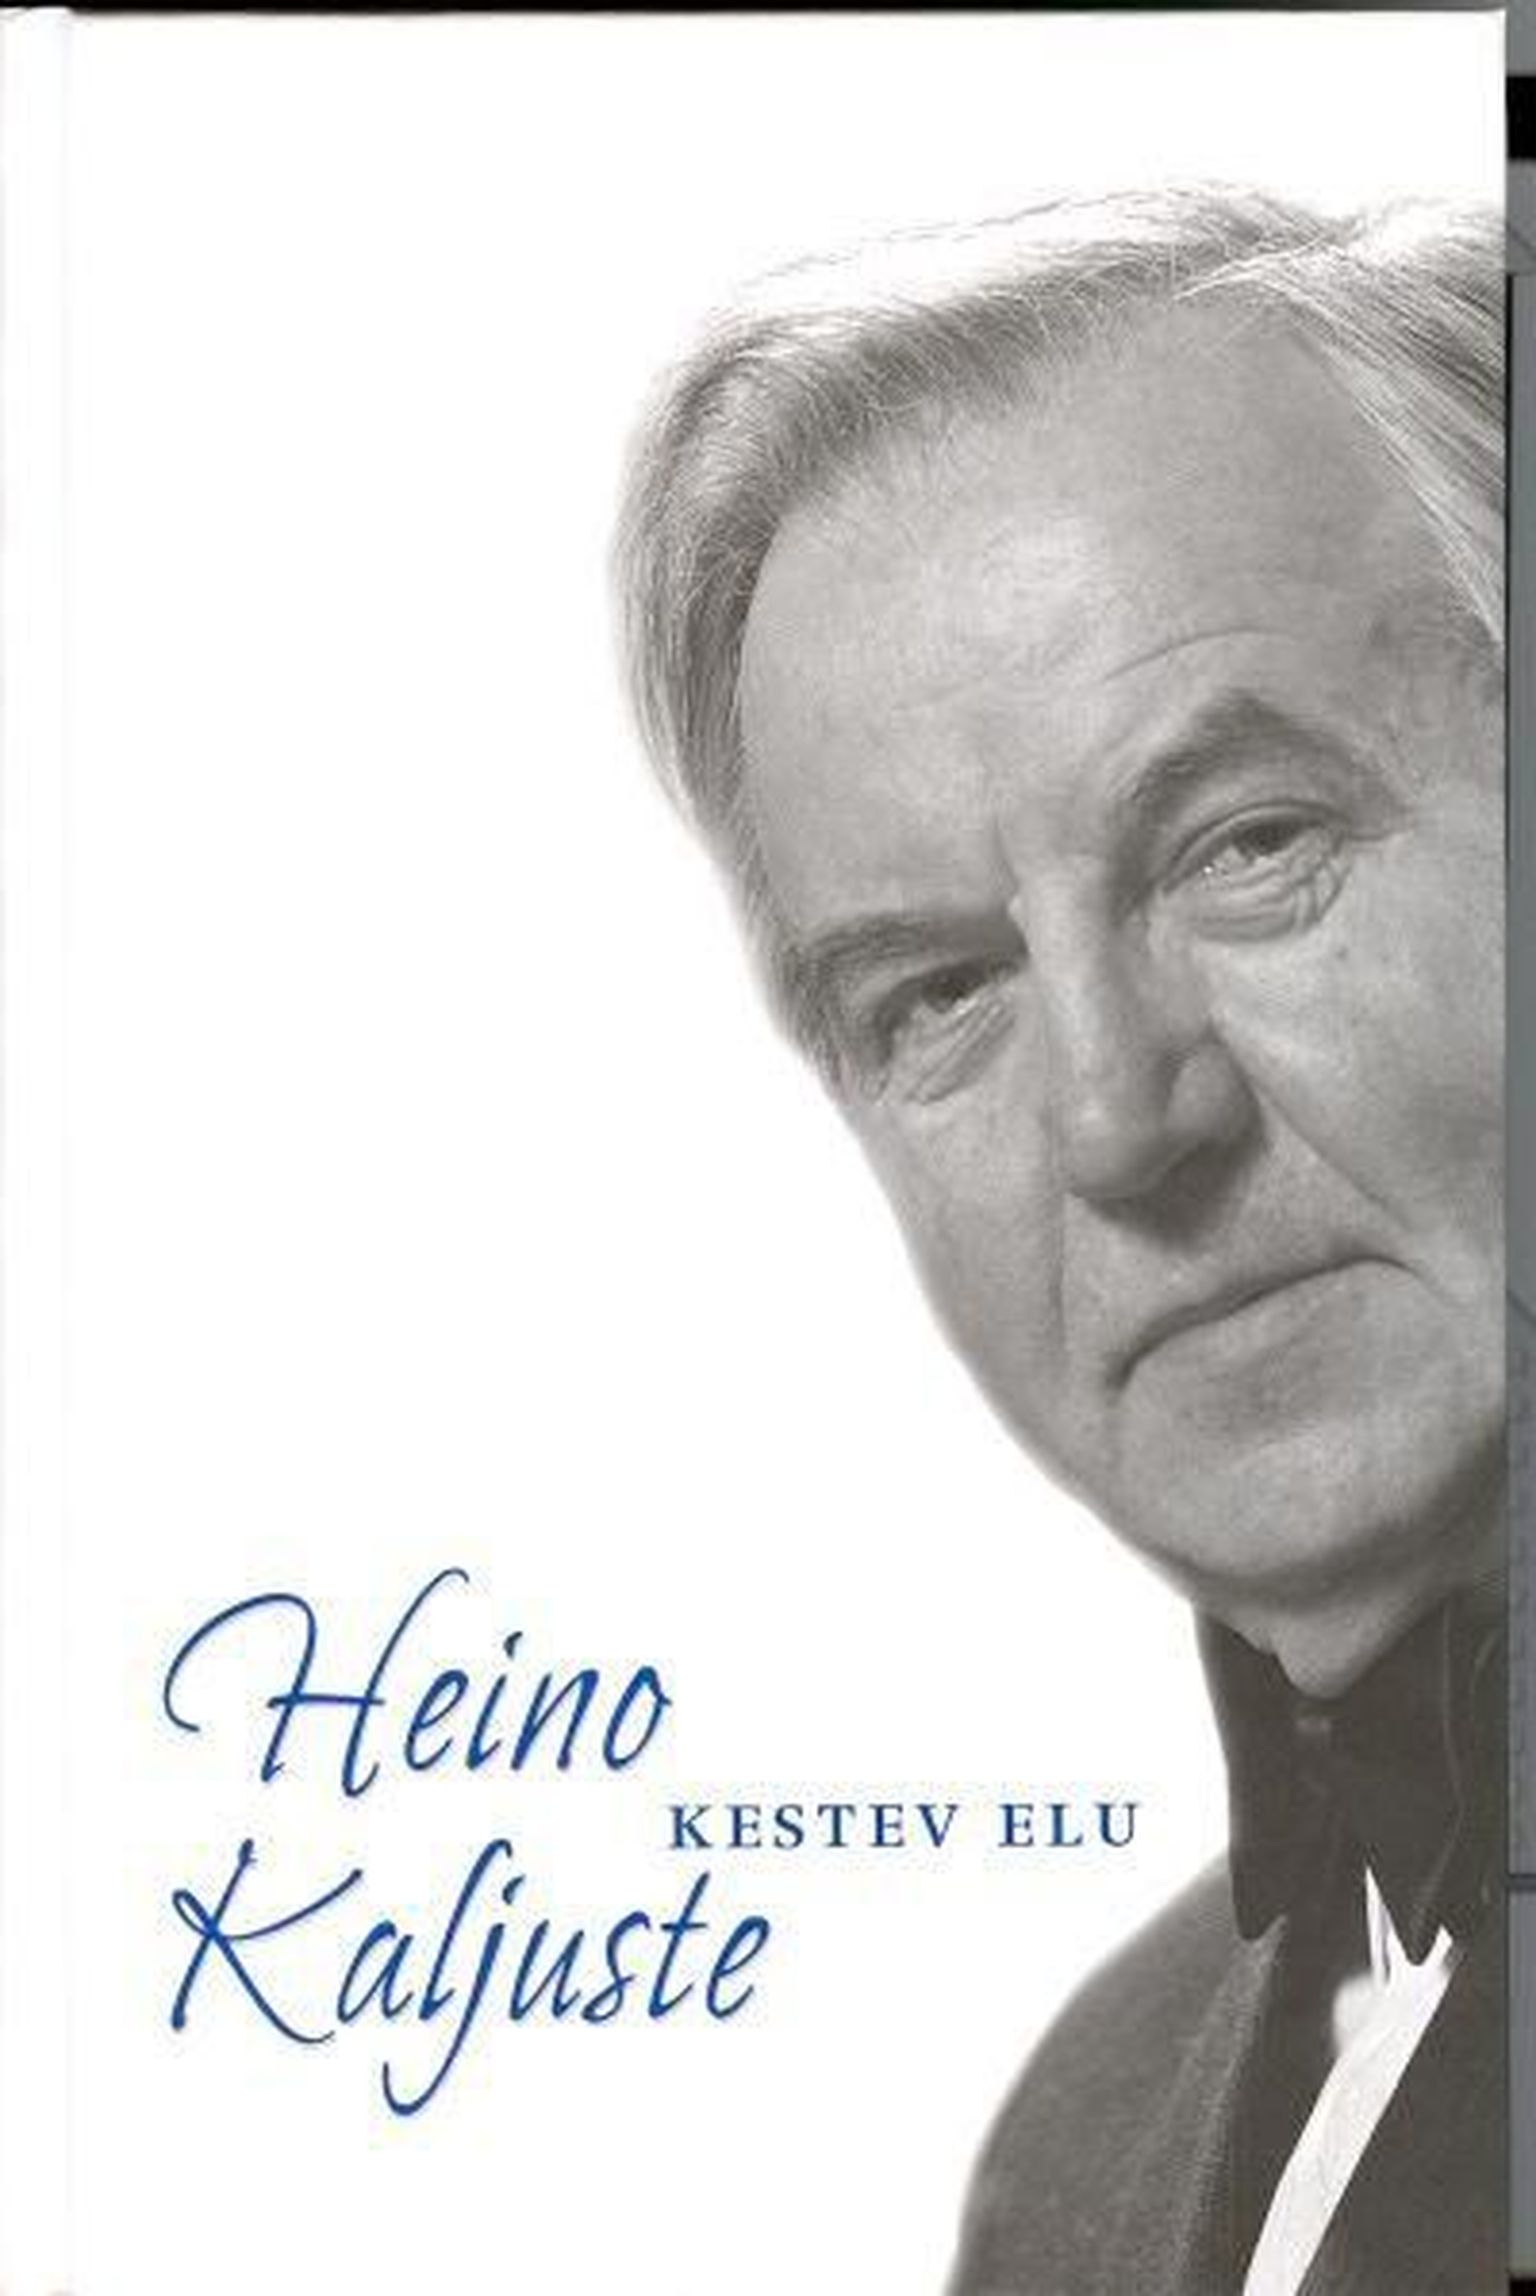 Heino Kaljuste oli eesti koorijuht ja pedagoog, kelle tegevusest annab hea ülevaate Maimo Kalmeti koostatud raamat «Heino Kaljuste kestev elu» (Lootsi Koda, 2005).